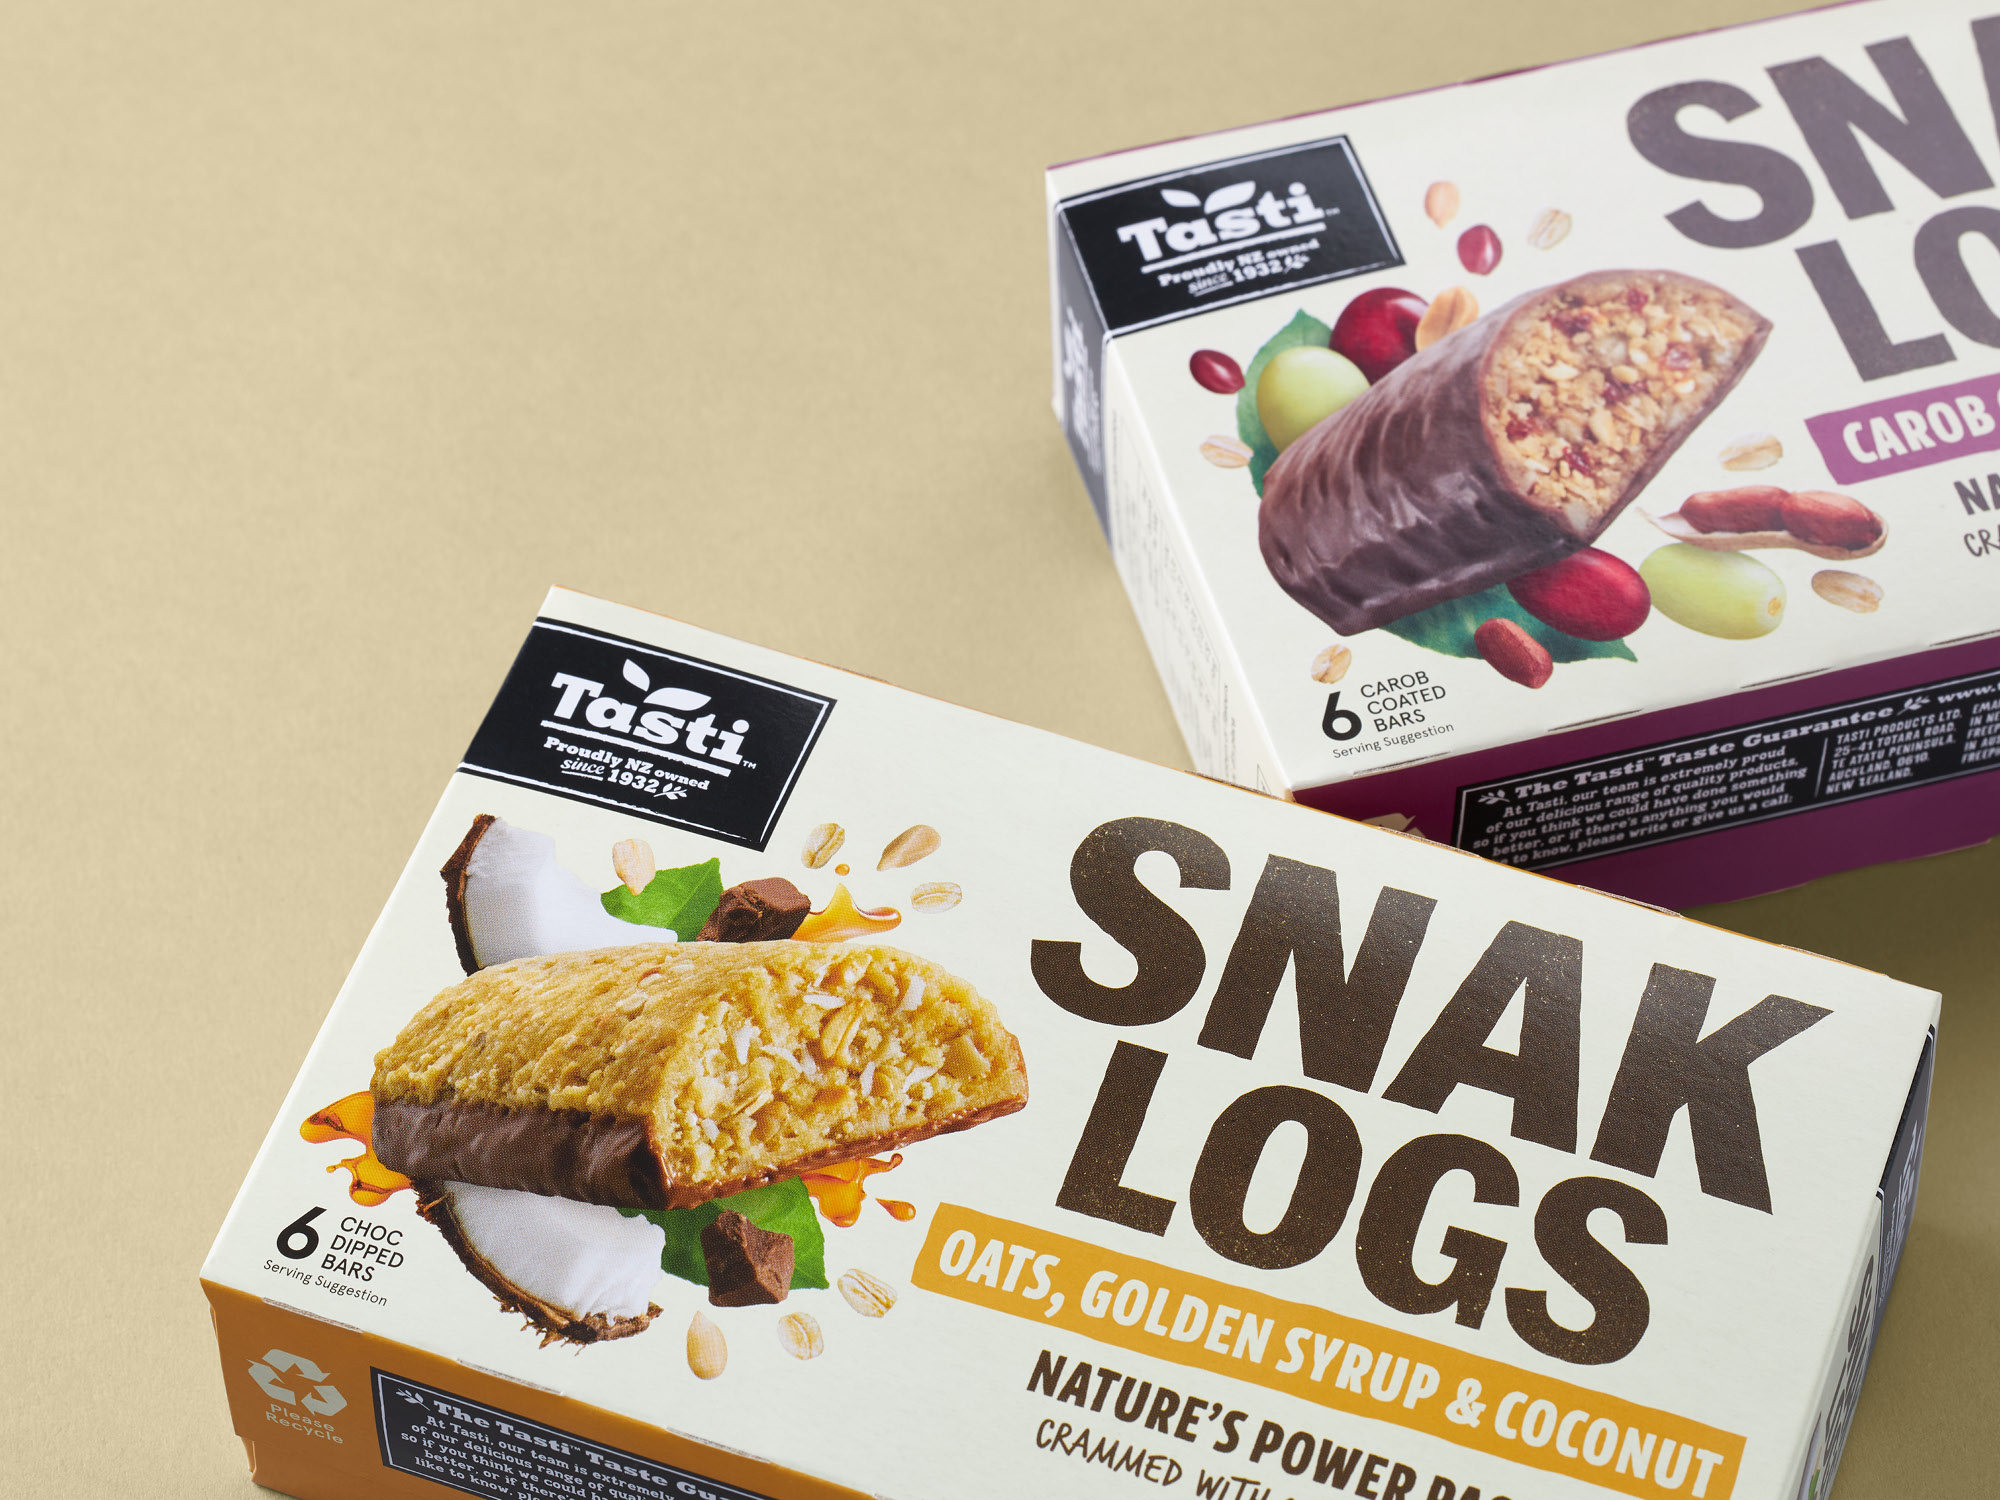 onfire design tasti snak logs packaging design 3